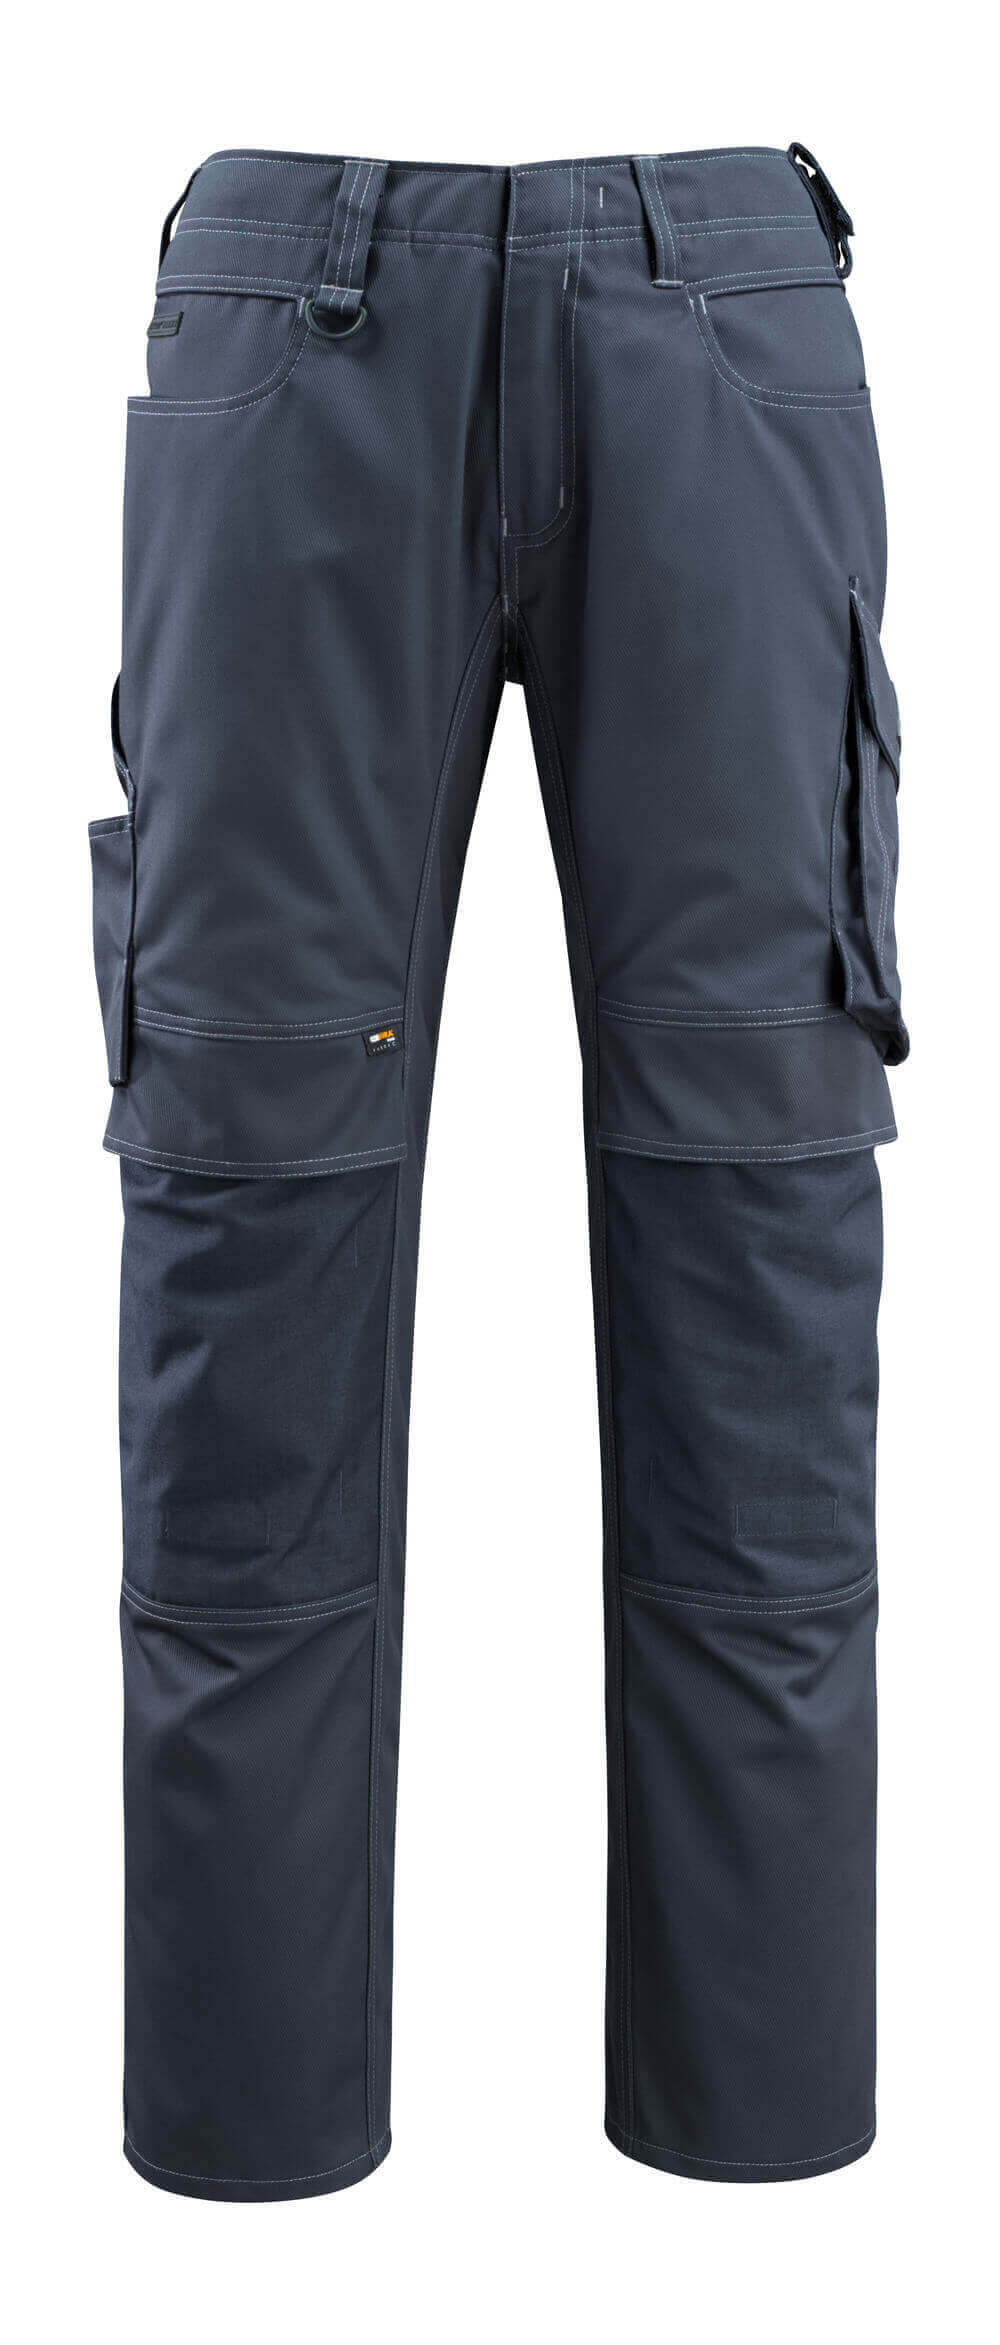 Hose mit Knietaschen UNIQUE Hose mit Knietaschen in Farbe Schwarzblau